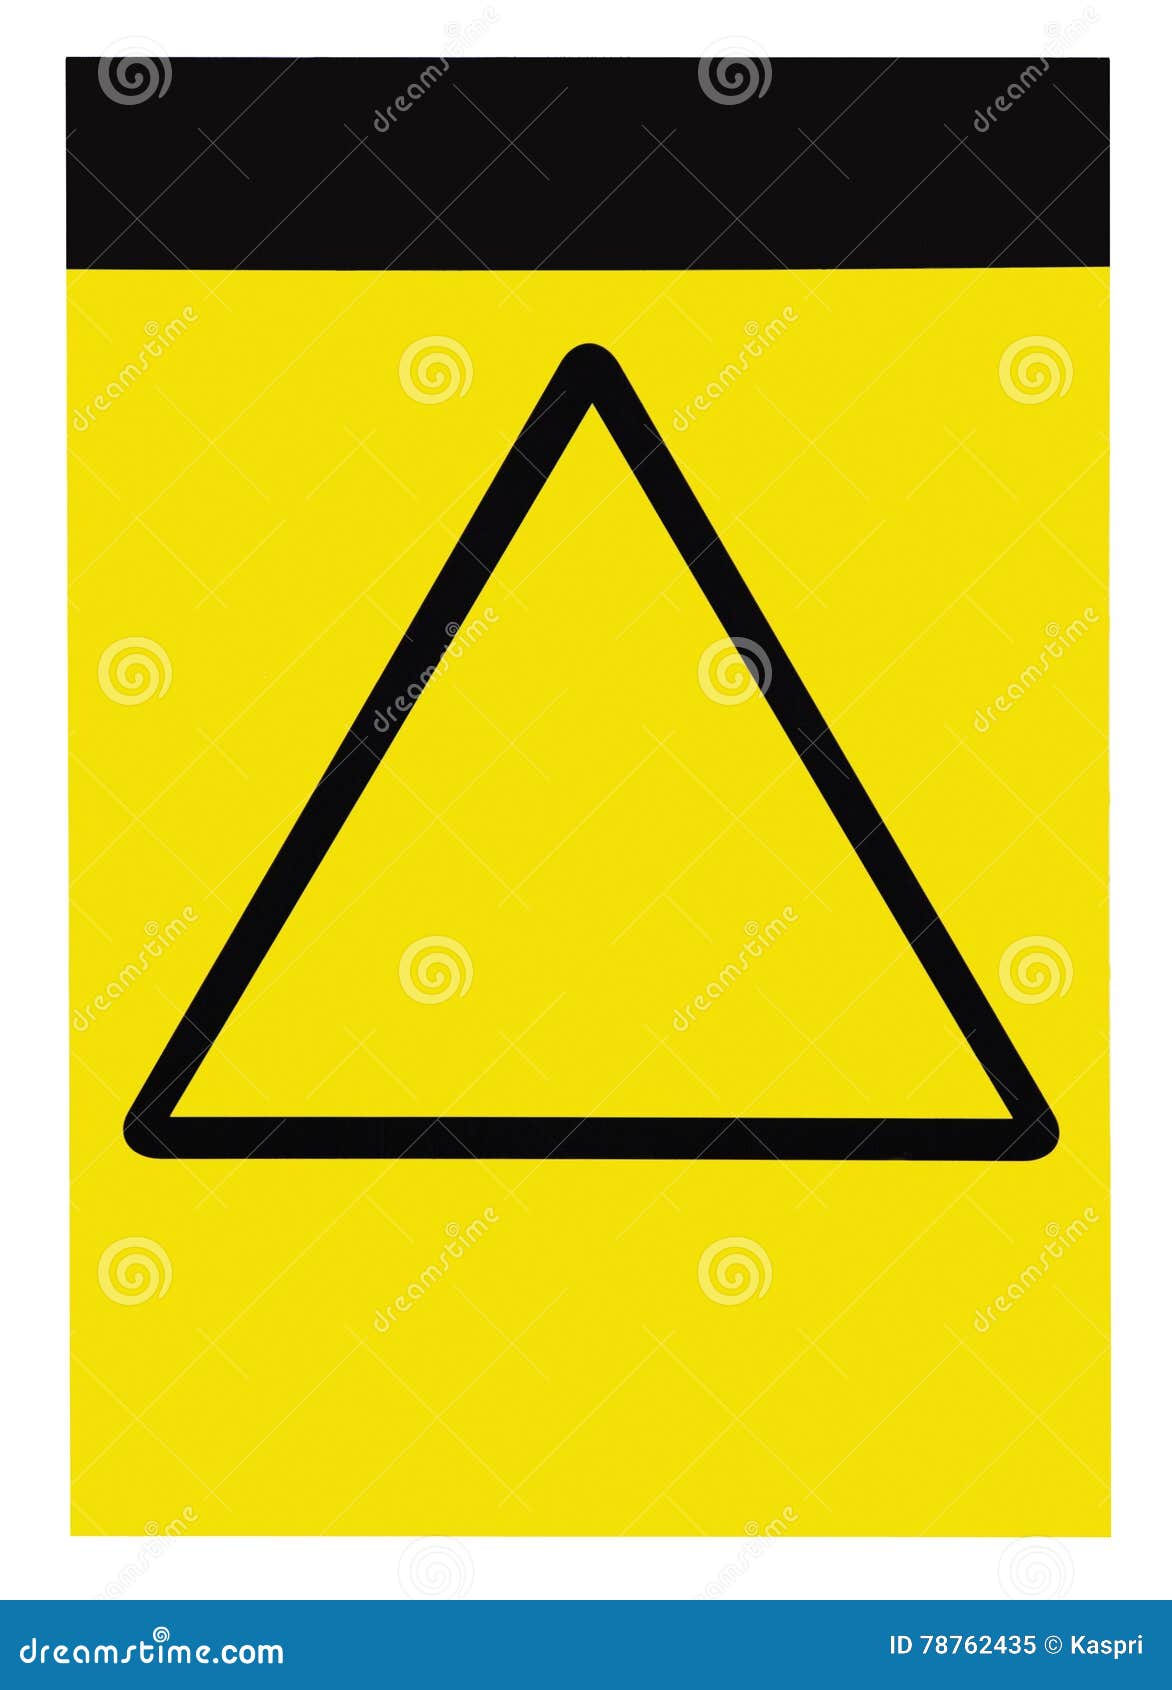 Self Isolation Isolating Warning Caution Sign Adhesive Sticker Small Large Sizes 